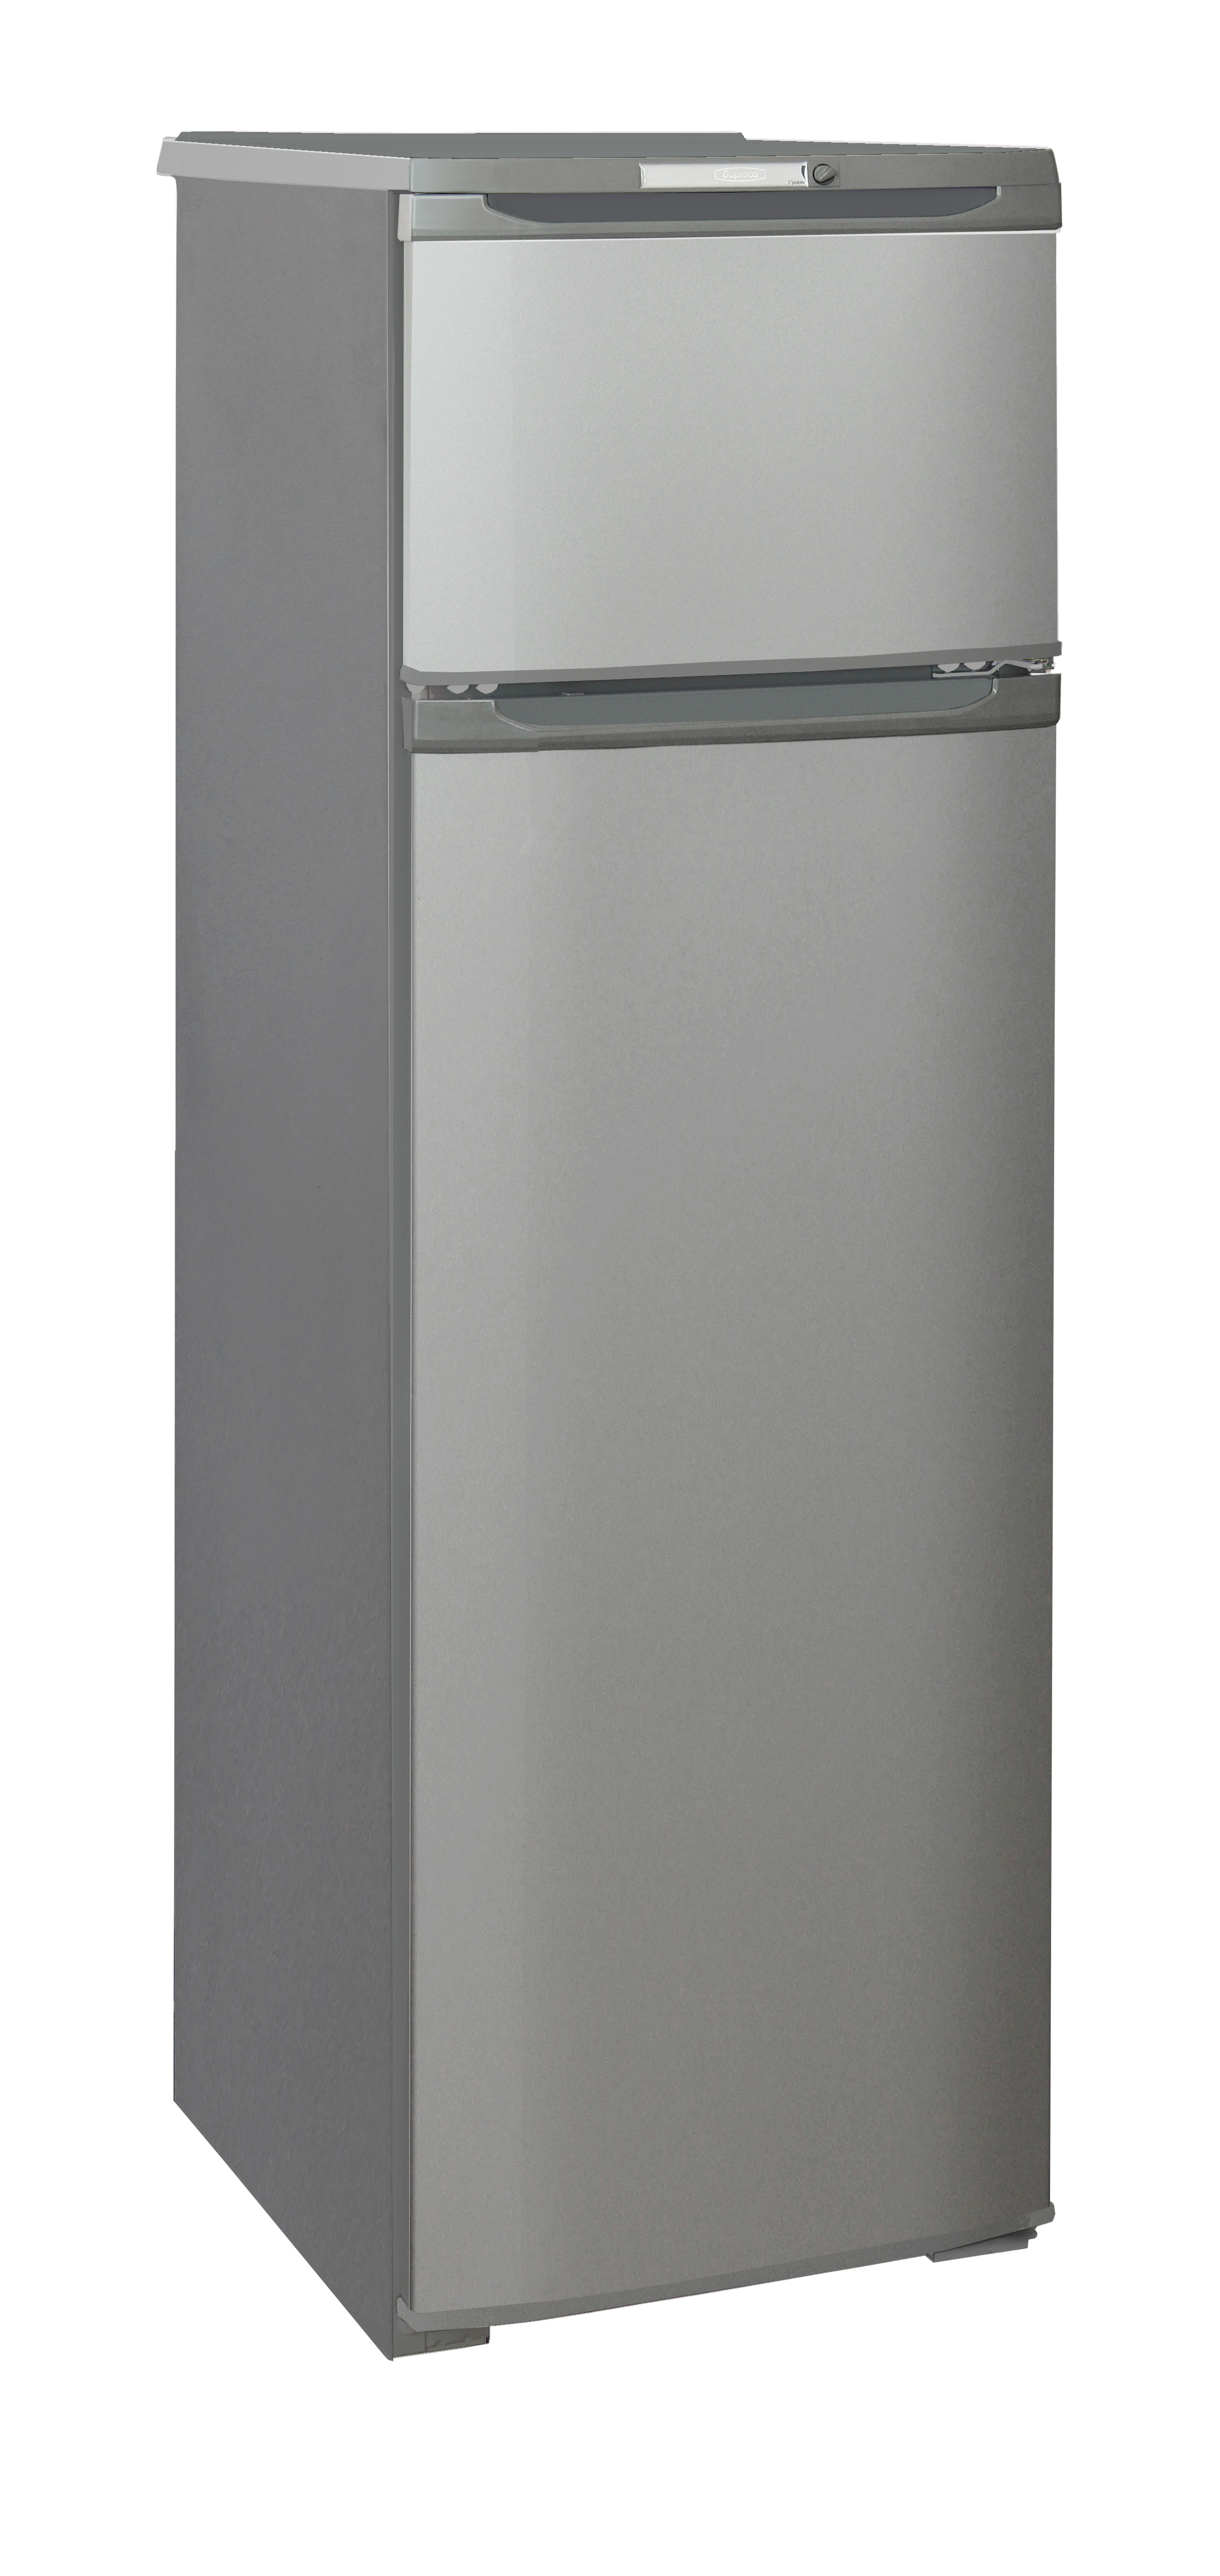 Холодильник БИРЮСА M 124																		 — описание, фото, цены в интернет-магазине Премьер Техно